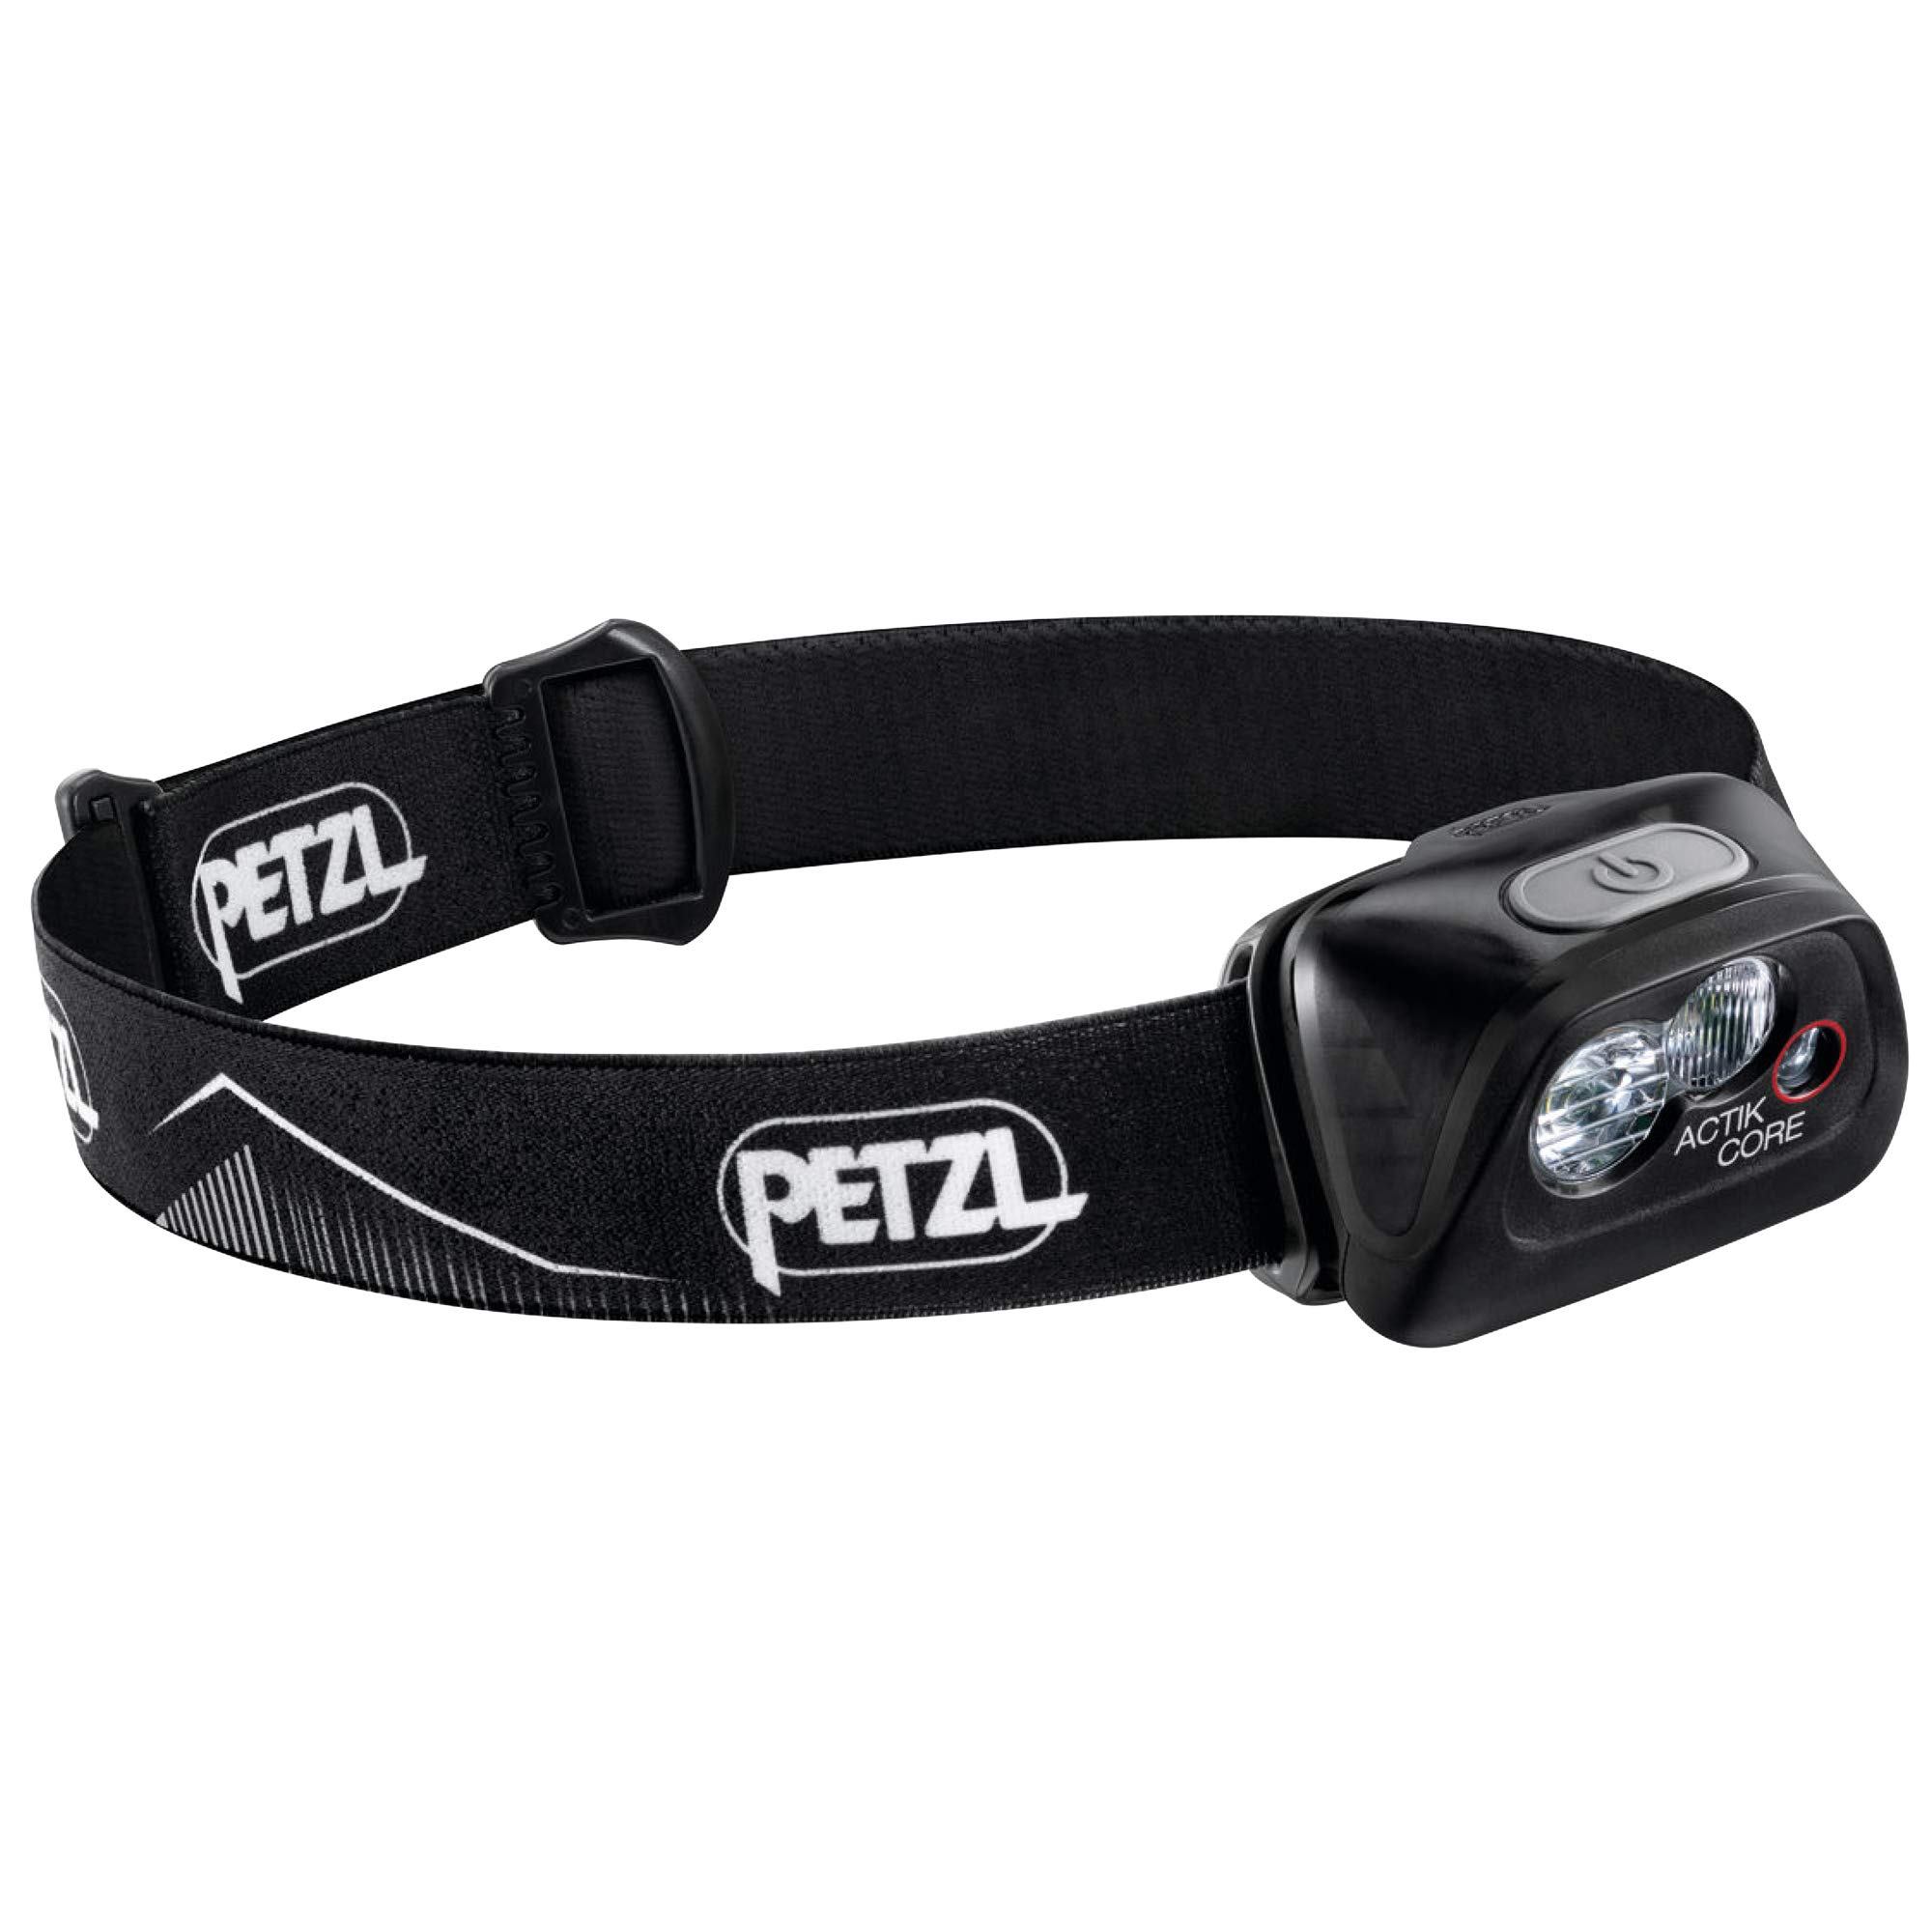 Petzl ACTIK CORE 头灯 - 强大的可充电 600 流明灯，带红色照明，适合远足、登山和露营...